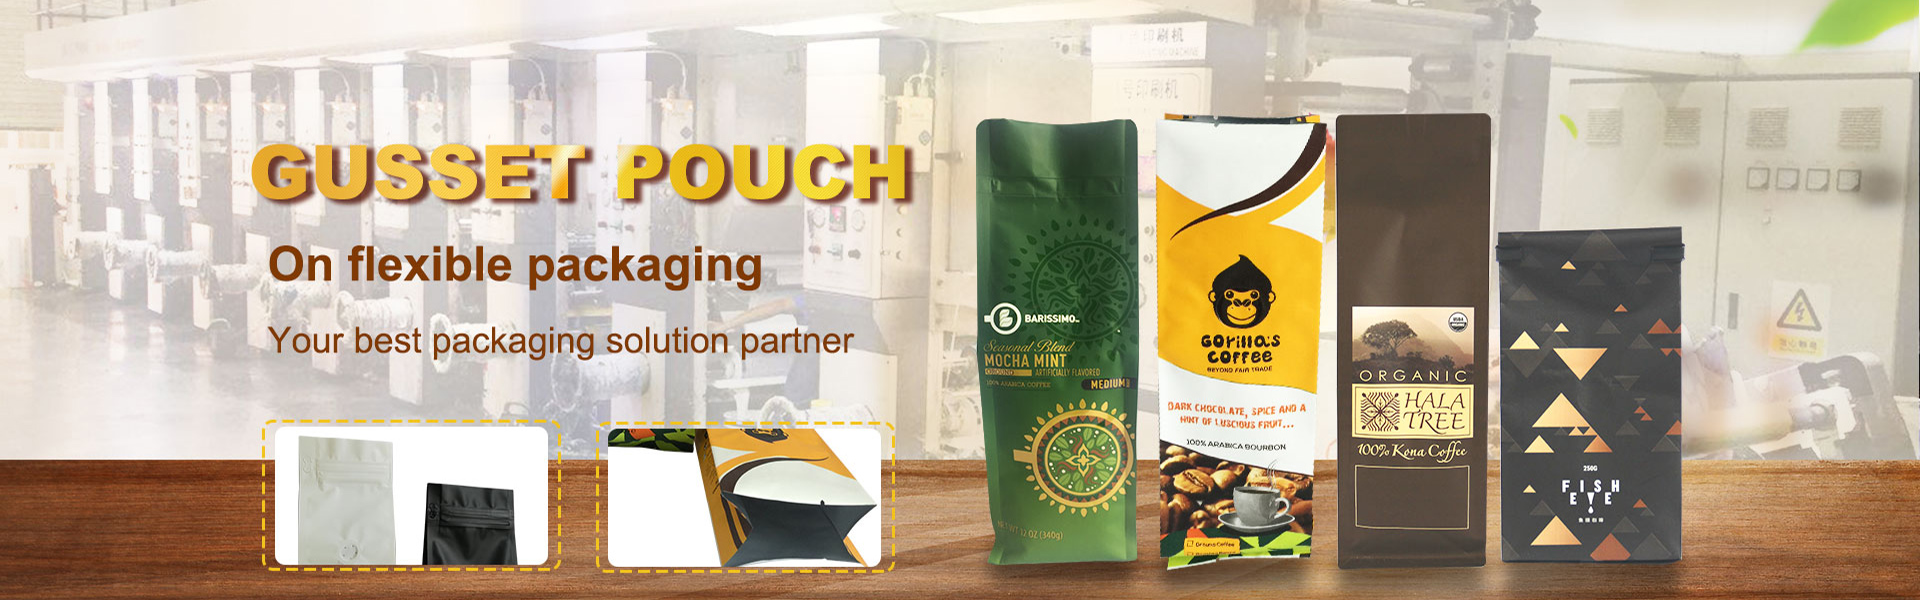 foshan rijing techtronic packaging co ltd